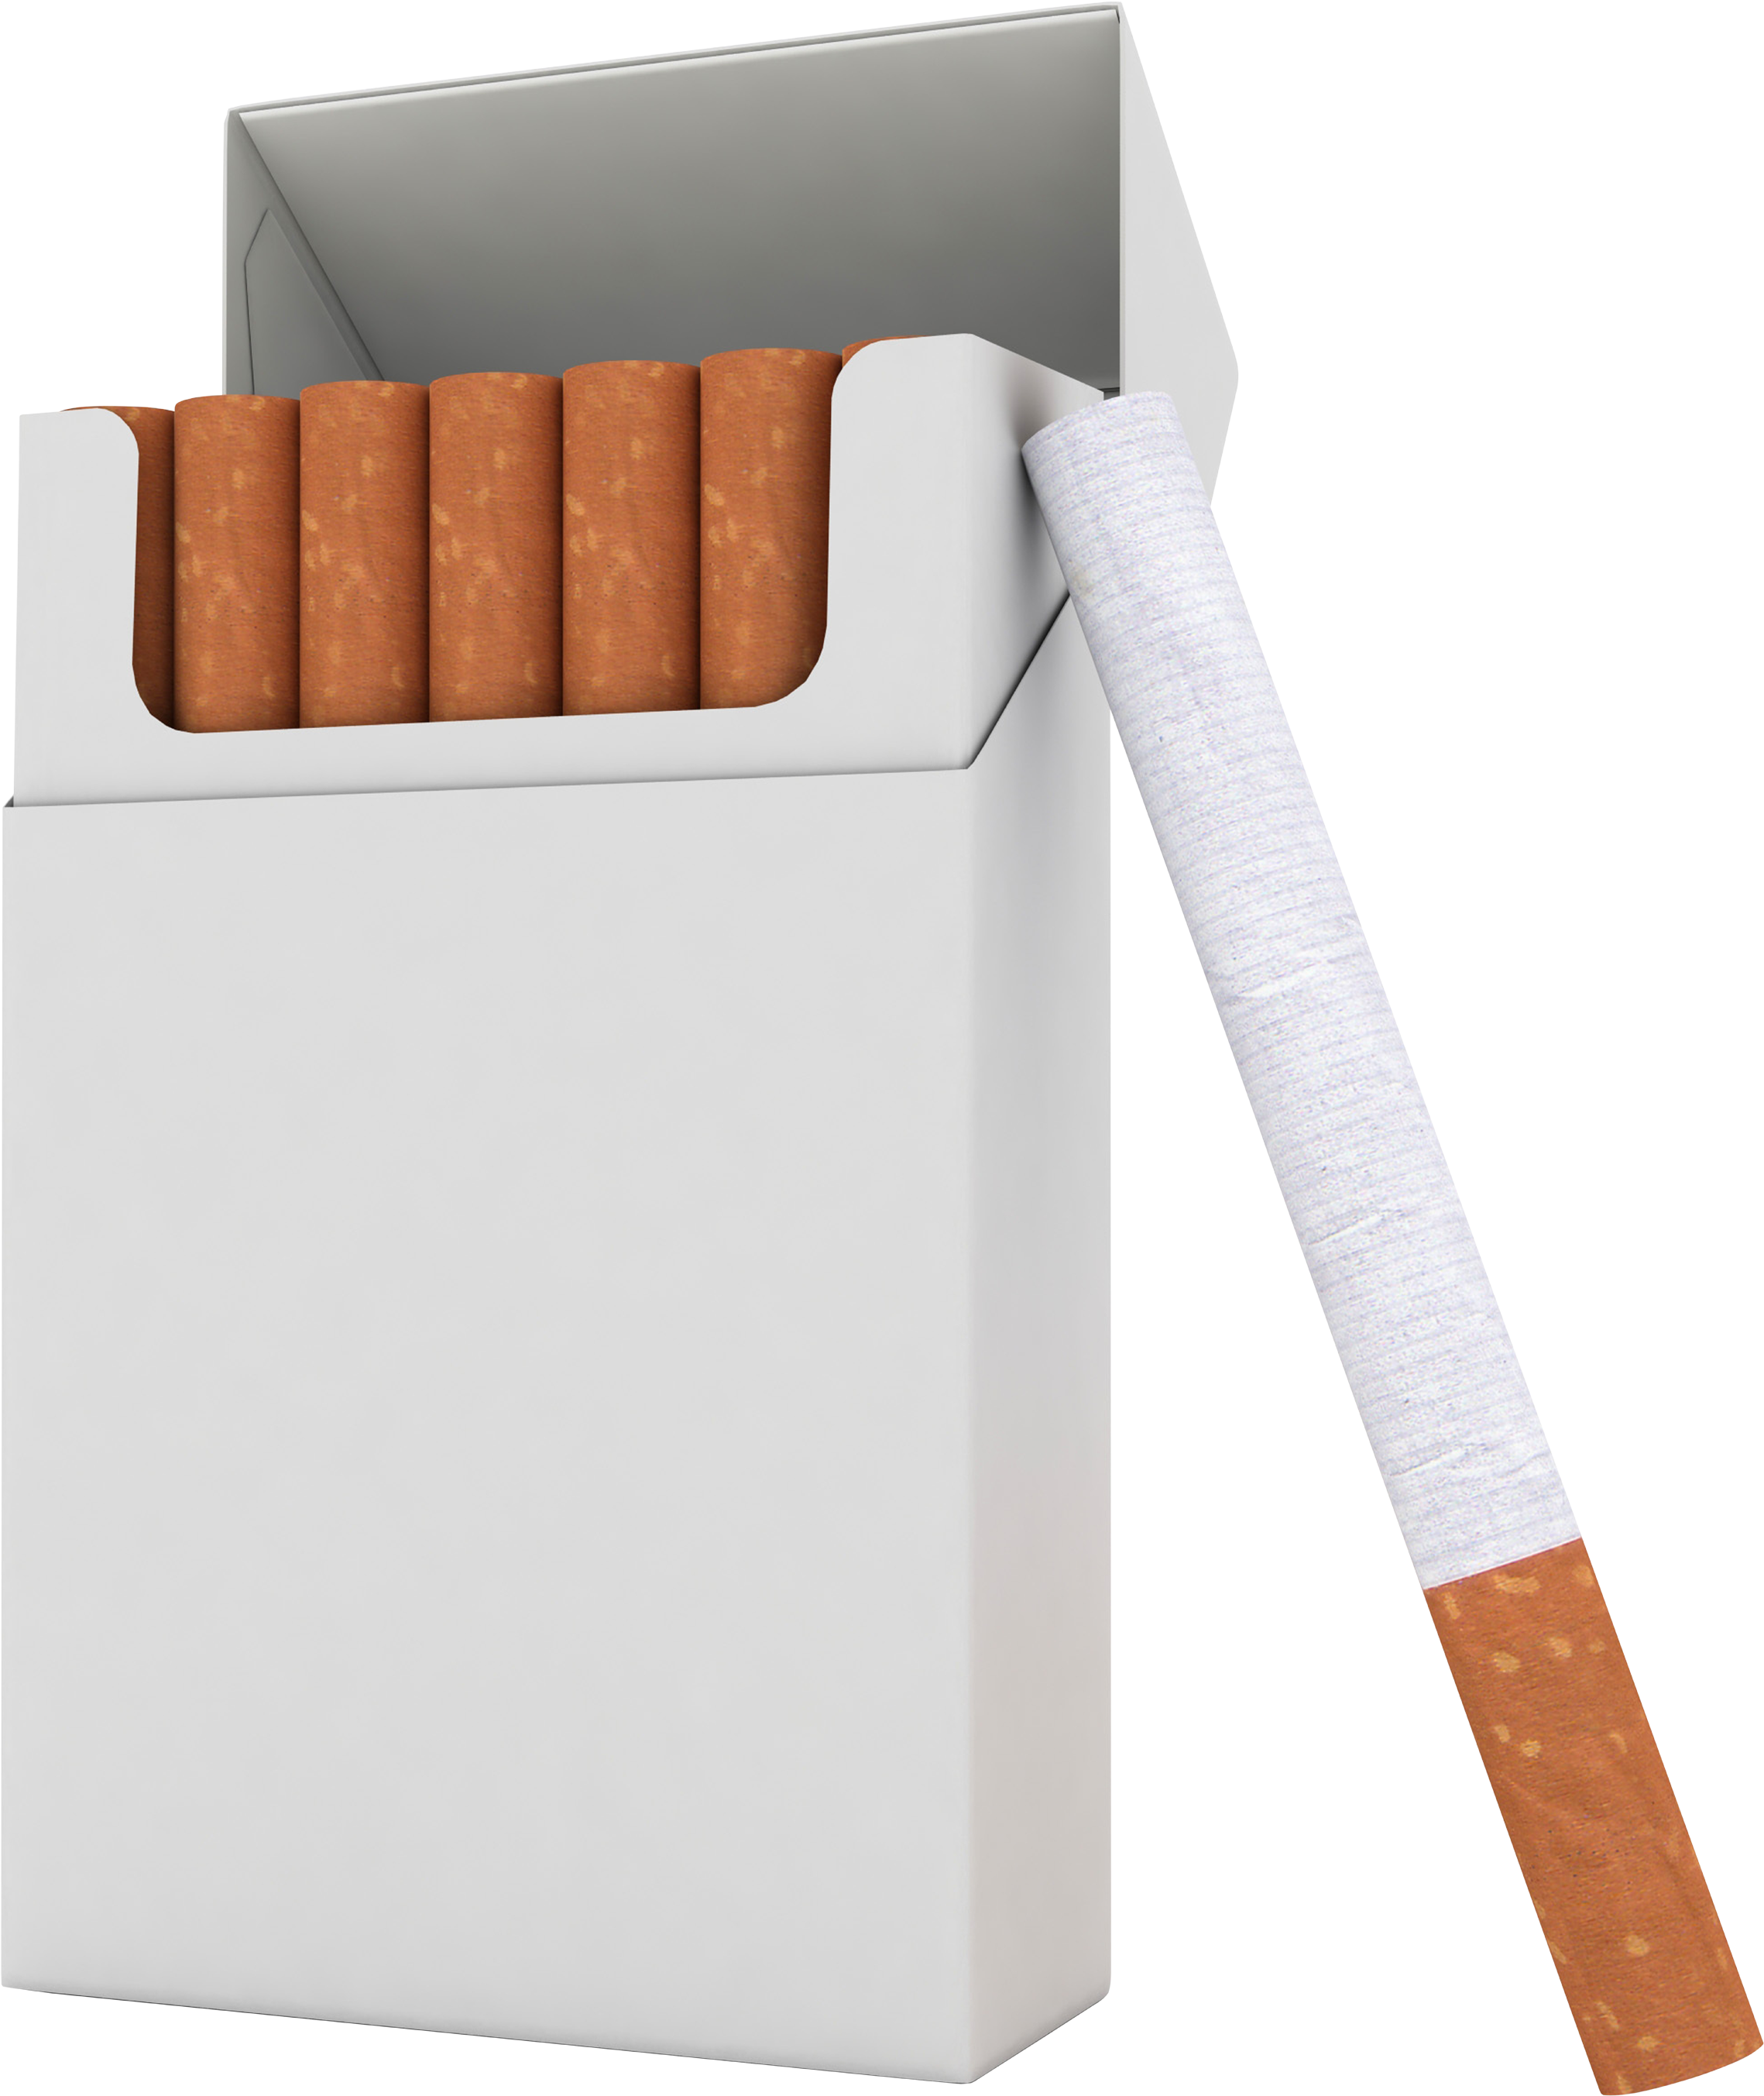 cigarette clipart picsart